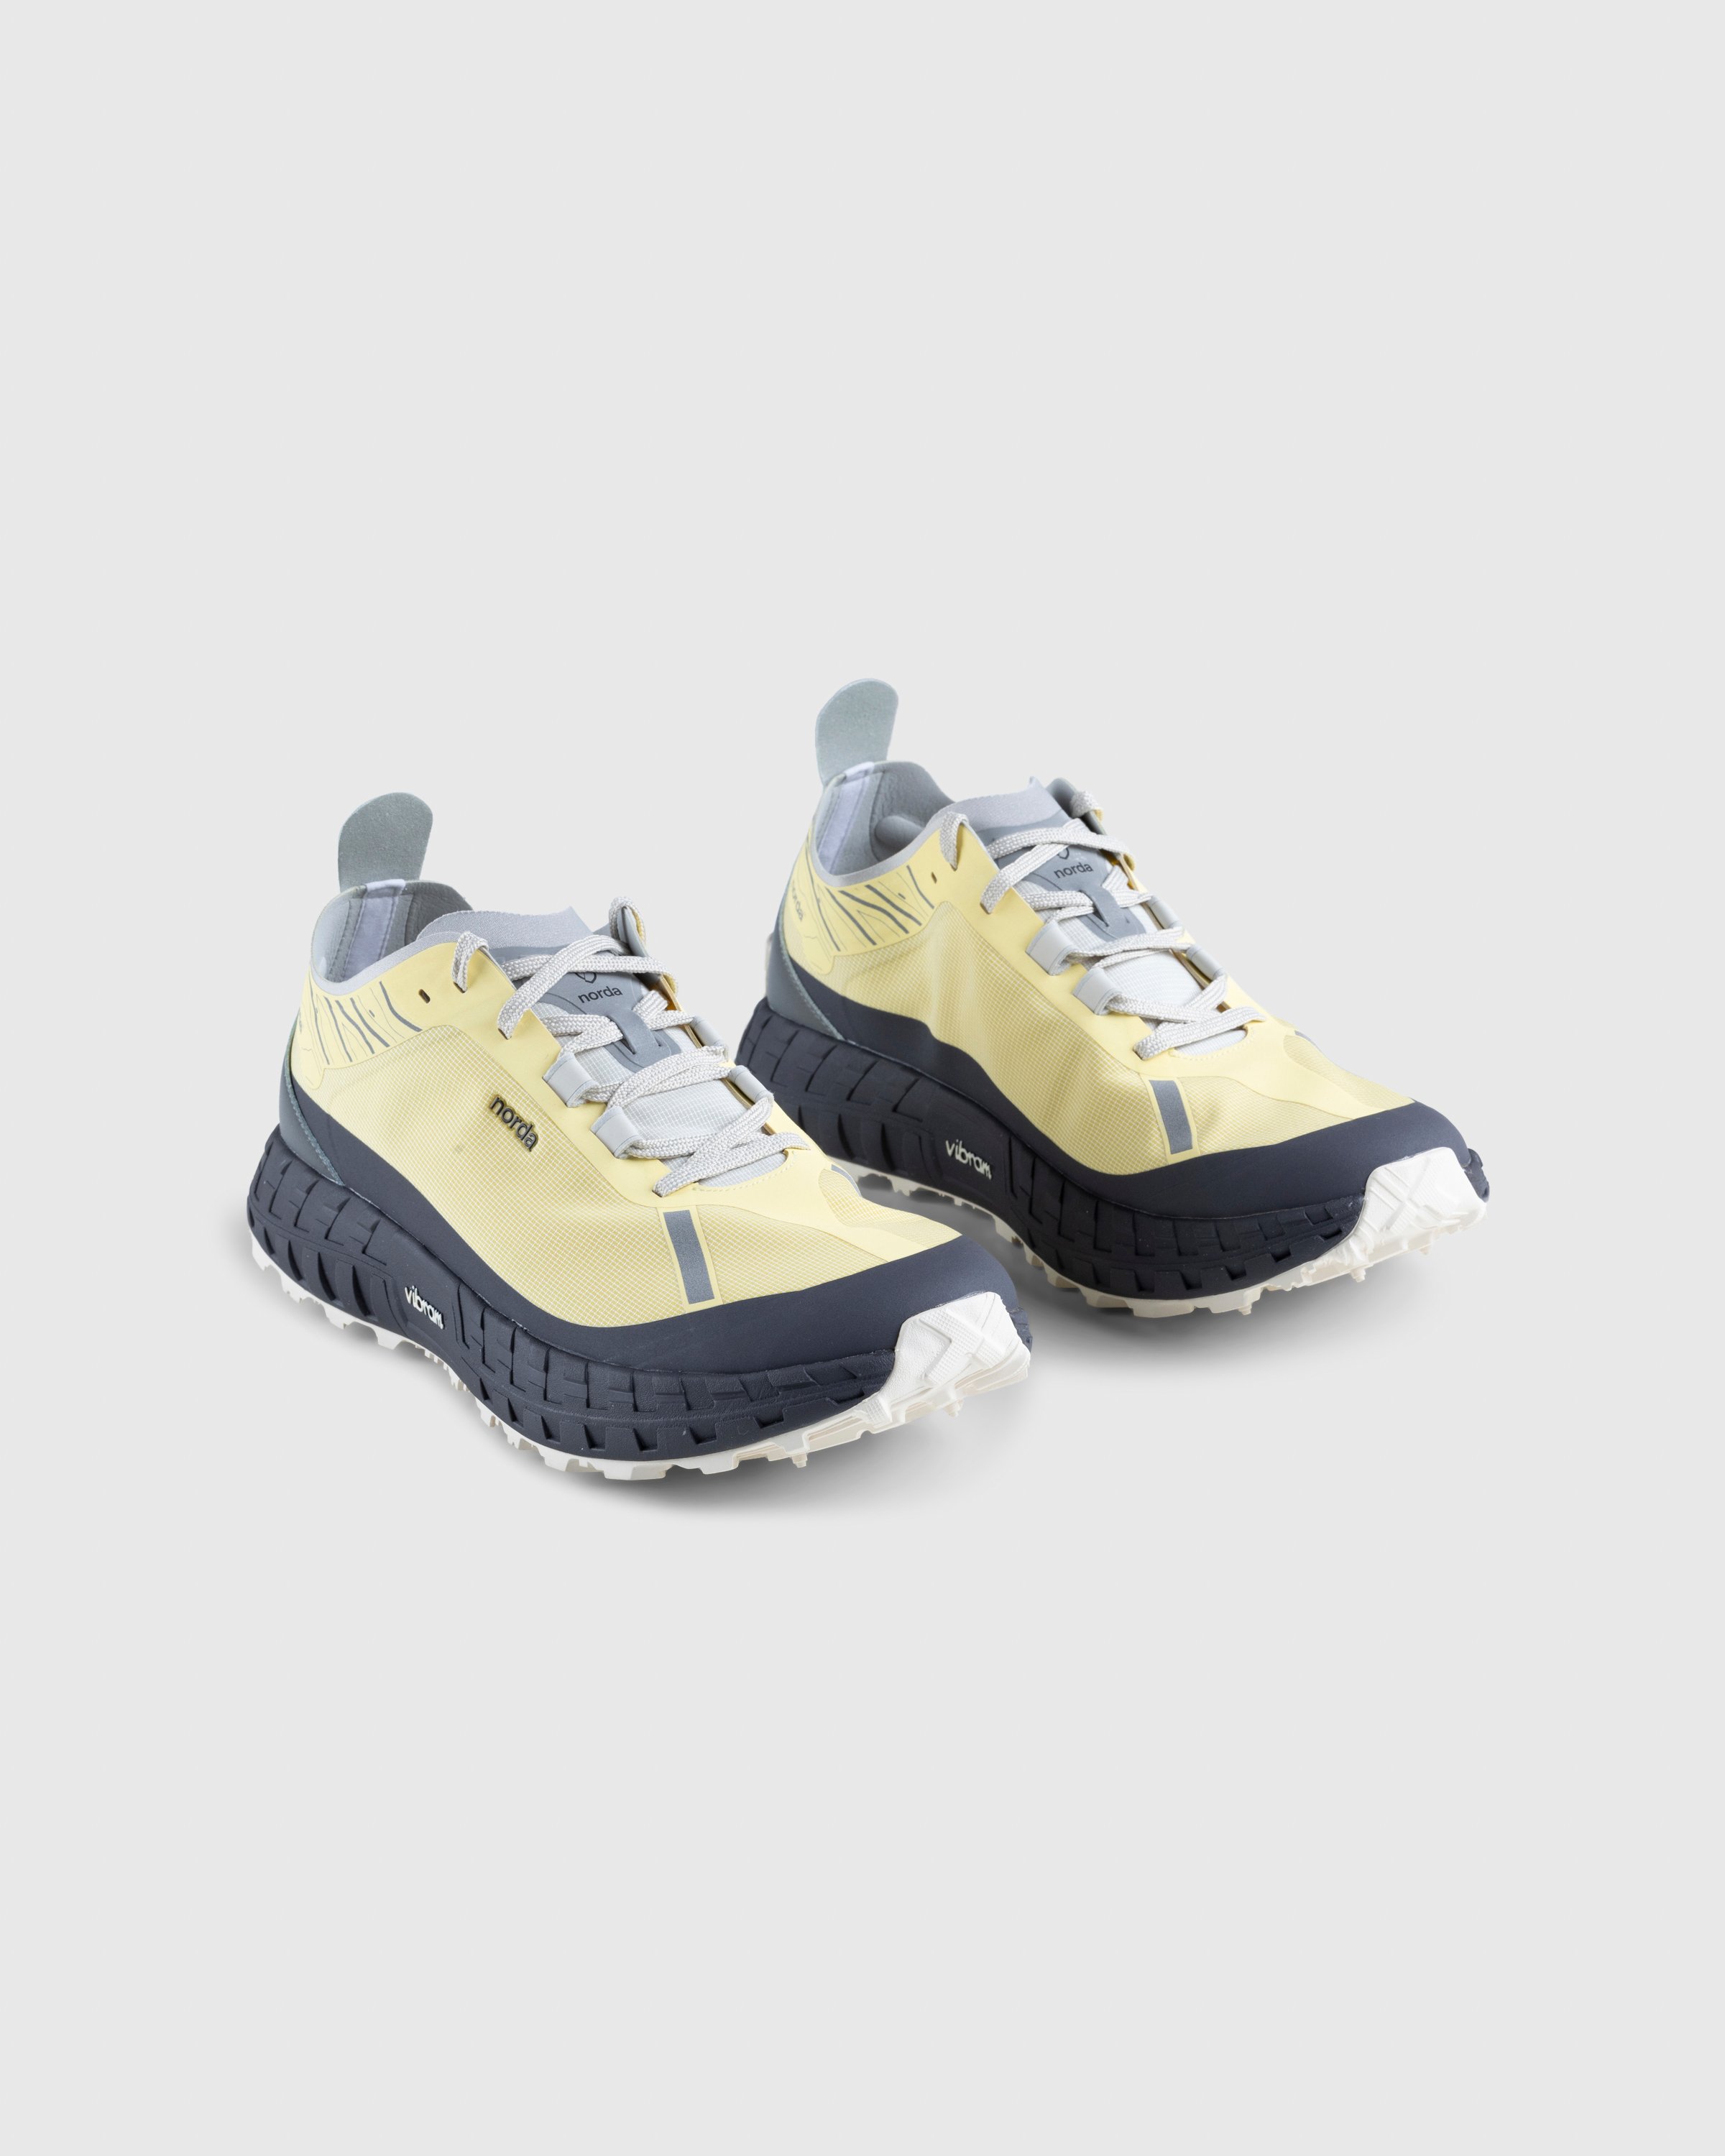 Norda - 001 W Lemon - Footwear - Yellow - Image 3